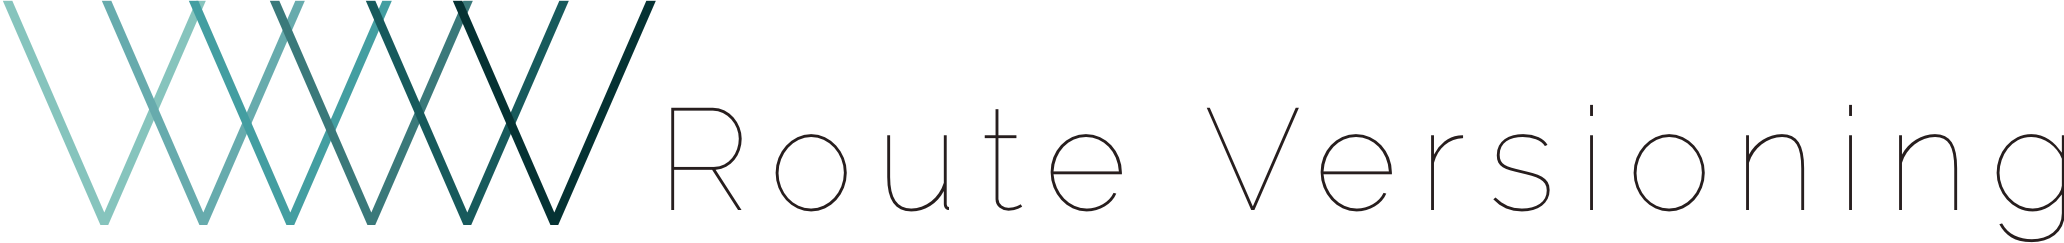 Route-v-logo